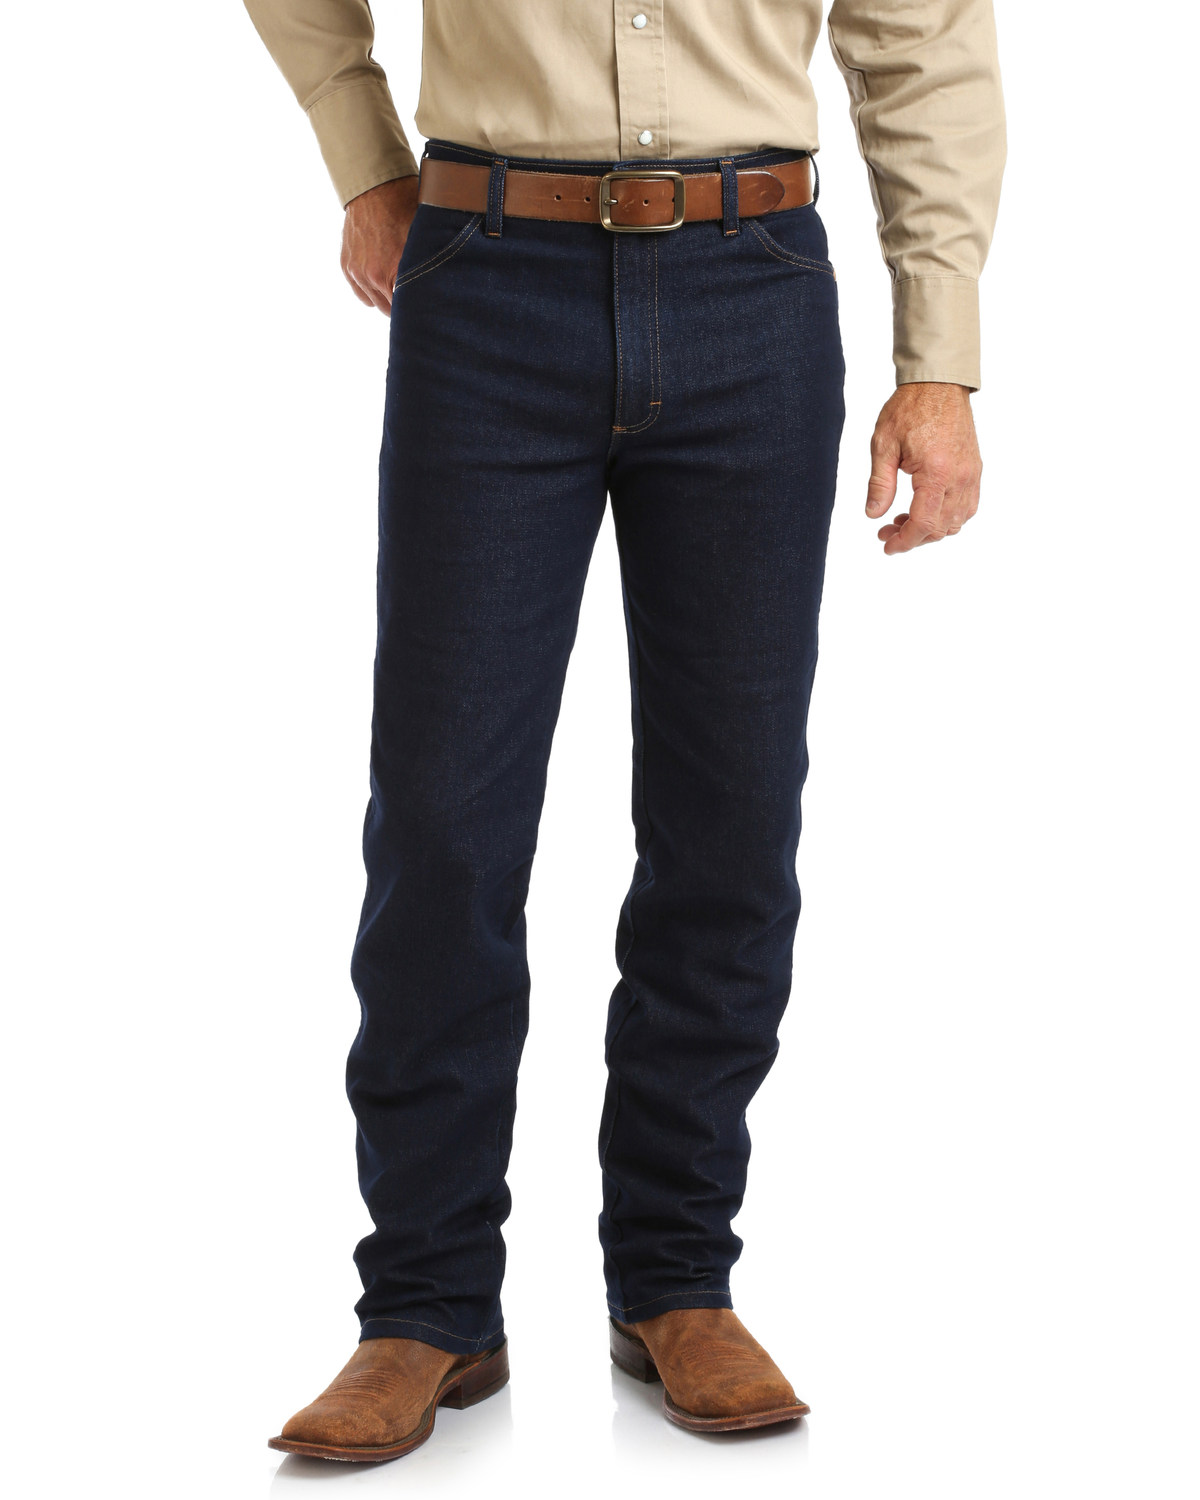 Wrangler Men's Cowboy Cut Active Flex Dark Bootcut Jeans - Big